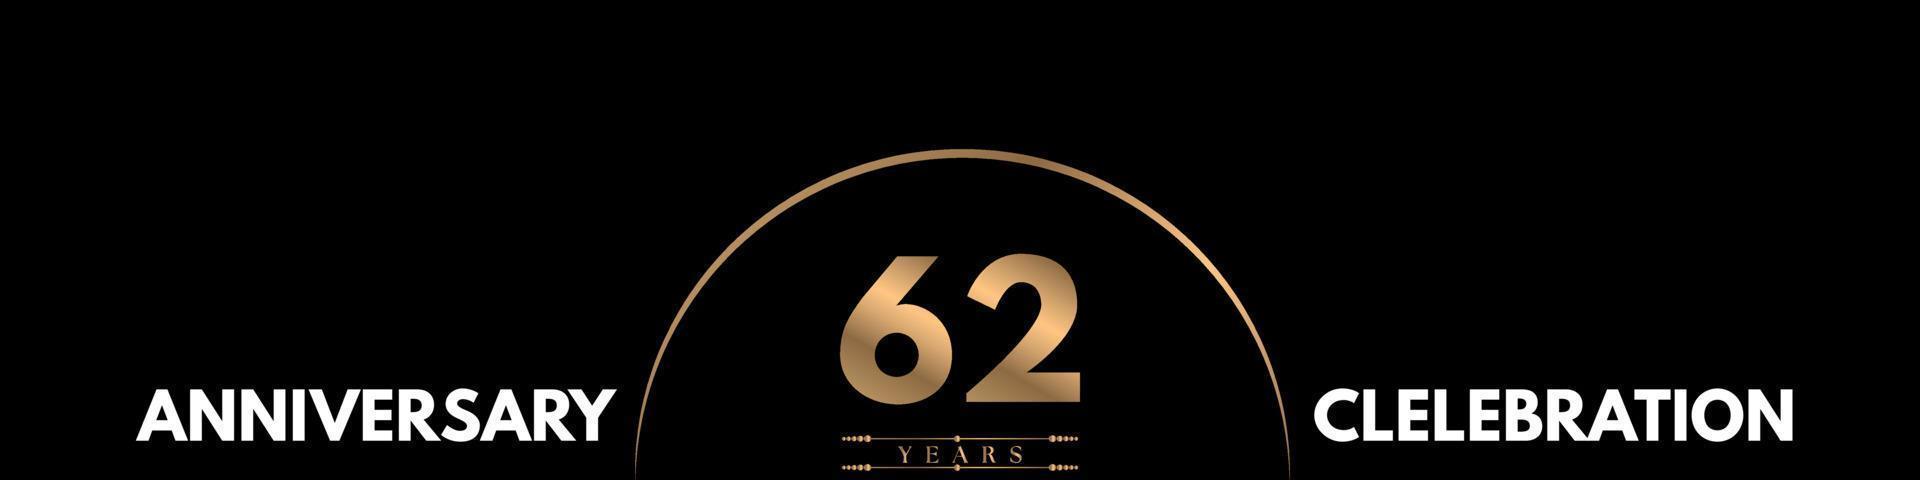 Celebración del aniversario de 62 años con un número elegante aislado en fondo negro. diseño vectorial para tarjeta de felicitación, fiesta de cumpleaños, boda, fiesta, ceremonia, tarjeta de invitación. vector